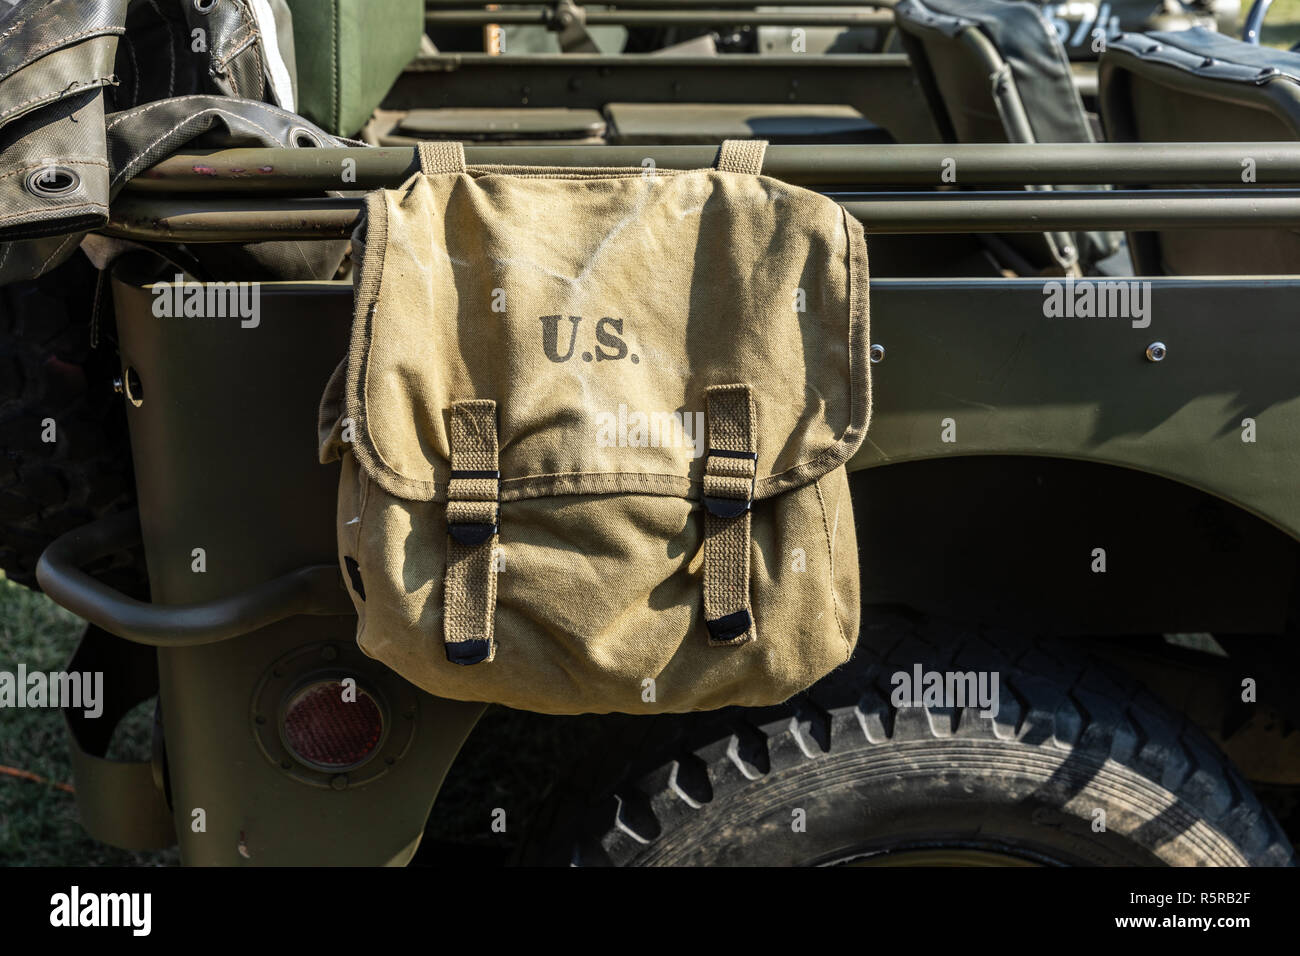 U.S borsa militare appendere su un veicolo verde Foto Stock